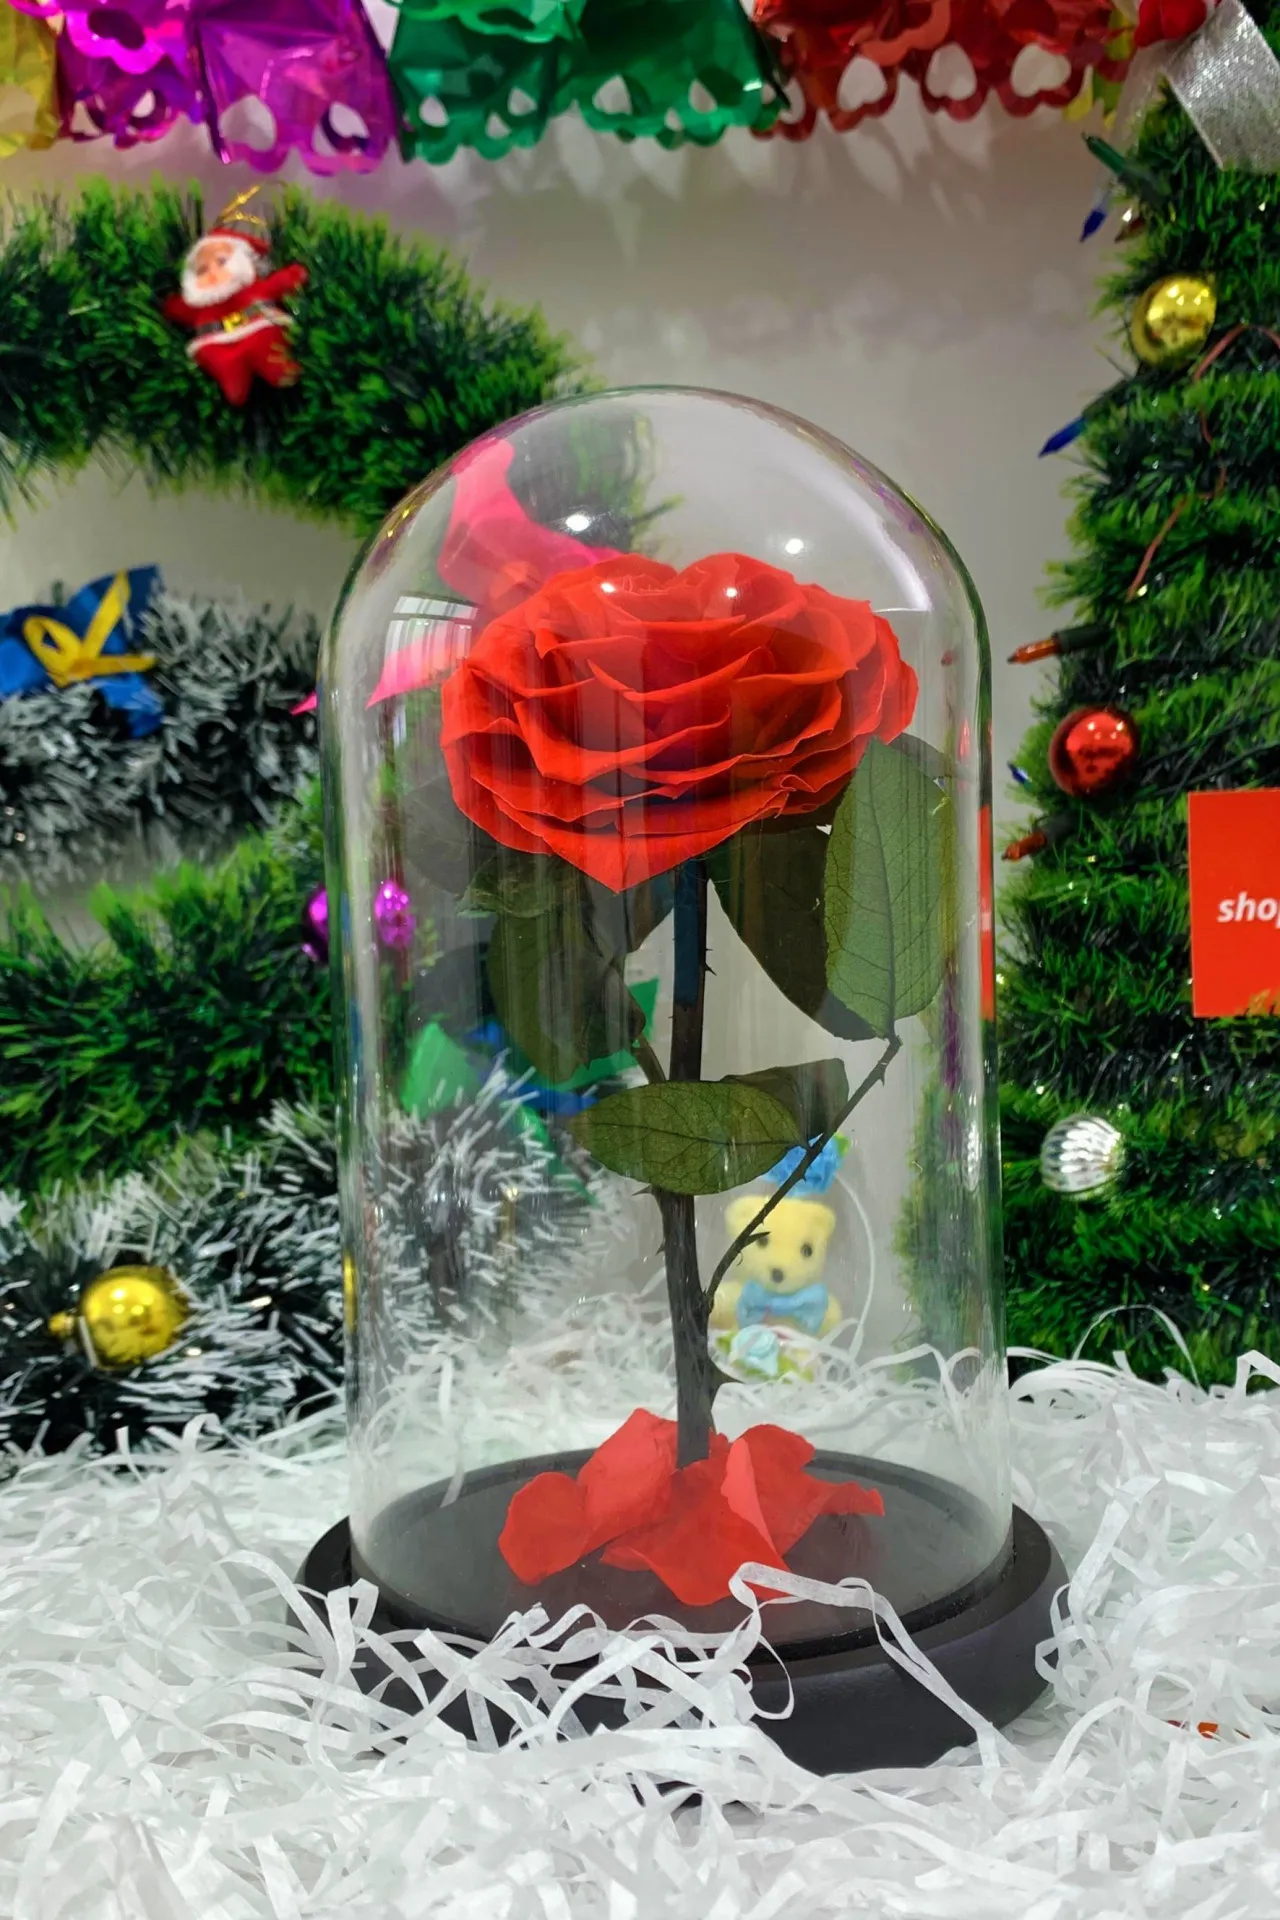 Подарочный набор - роза в колбе, серебряное ожерелье роза, зеркало n0230 SHK Gift#2